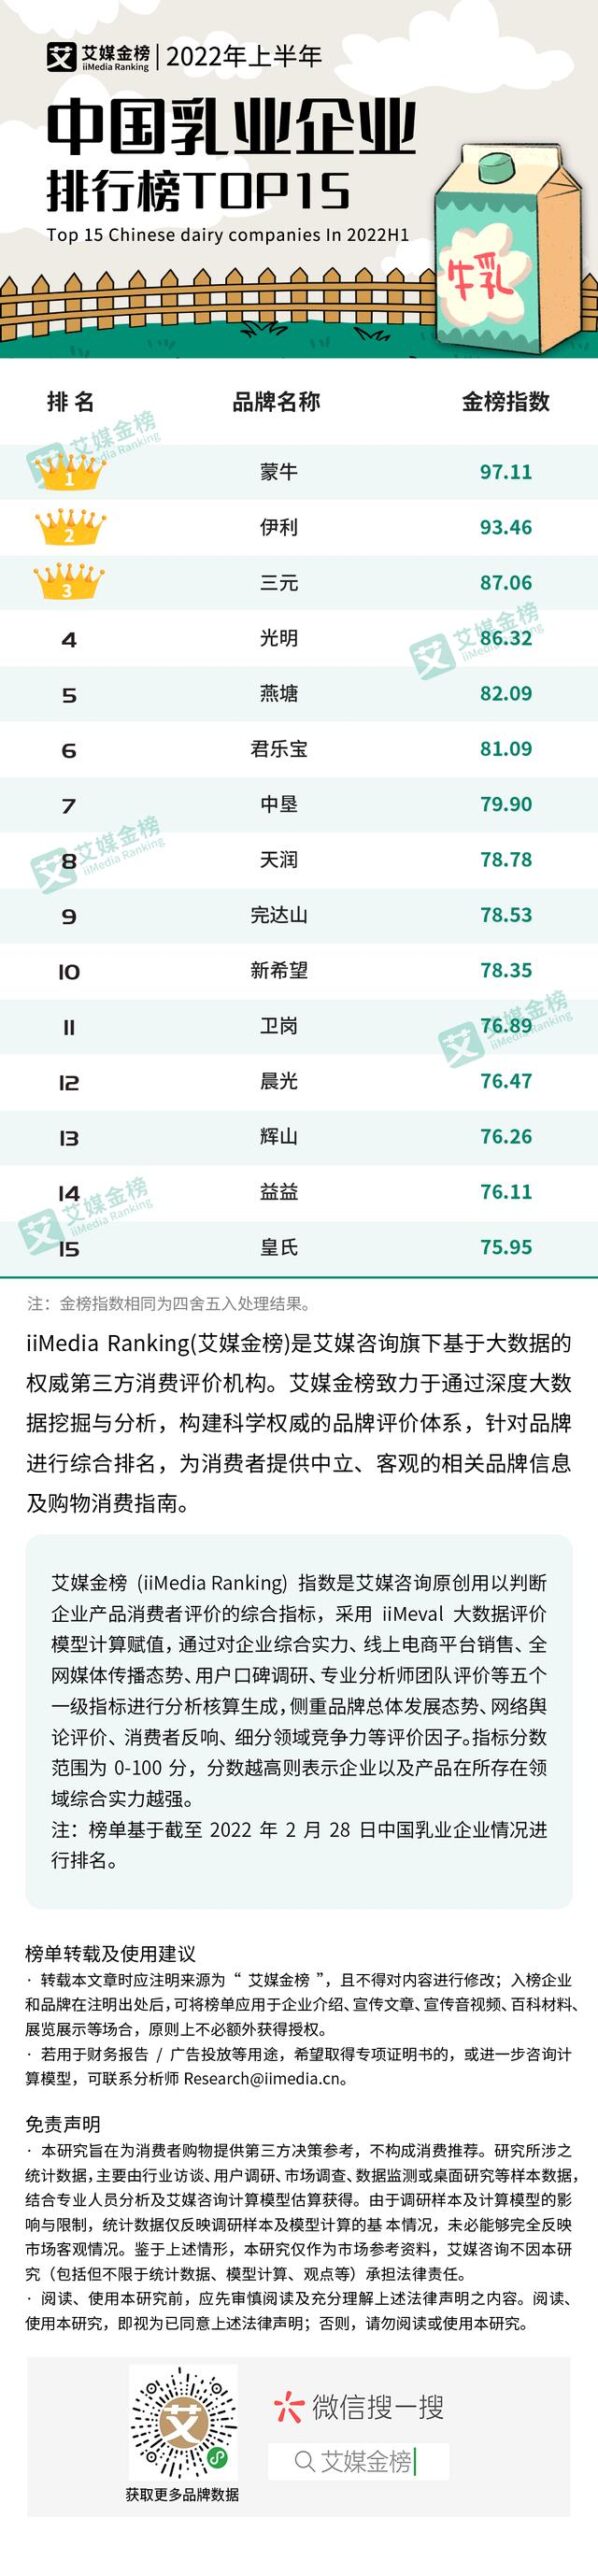 中国十大乳业排行榜(排行榜123网)插图